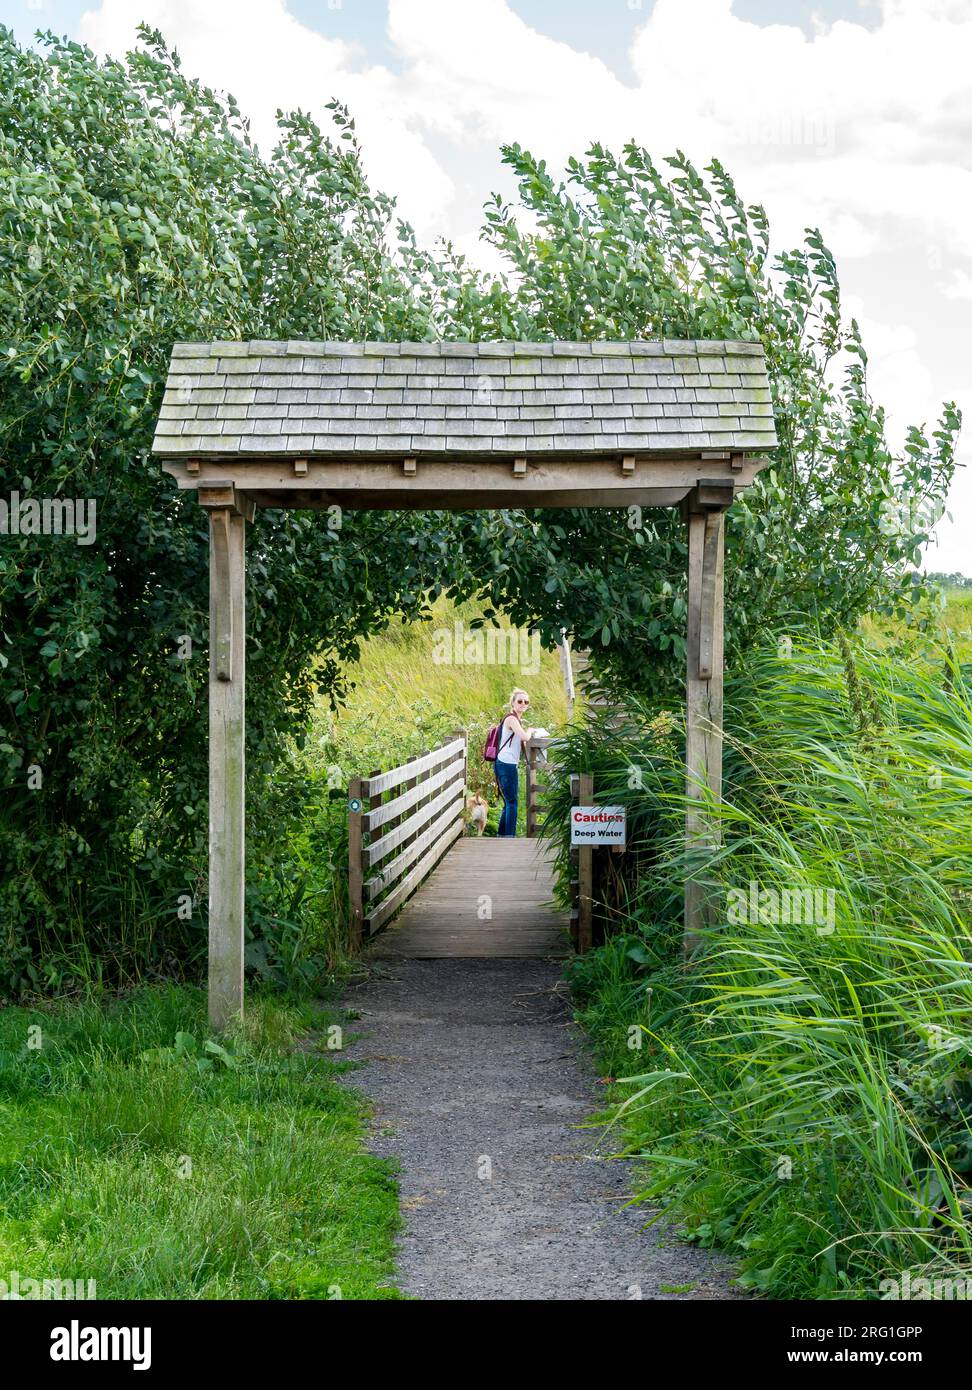 Porte de la rivière Witham depuis Cheery Fields Cherry Willingham, Lincolnshire, Angleterre, Royaume-Uni Banque D'Images